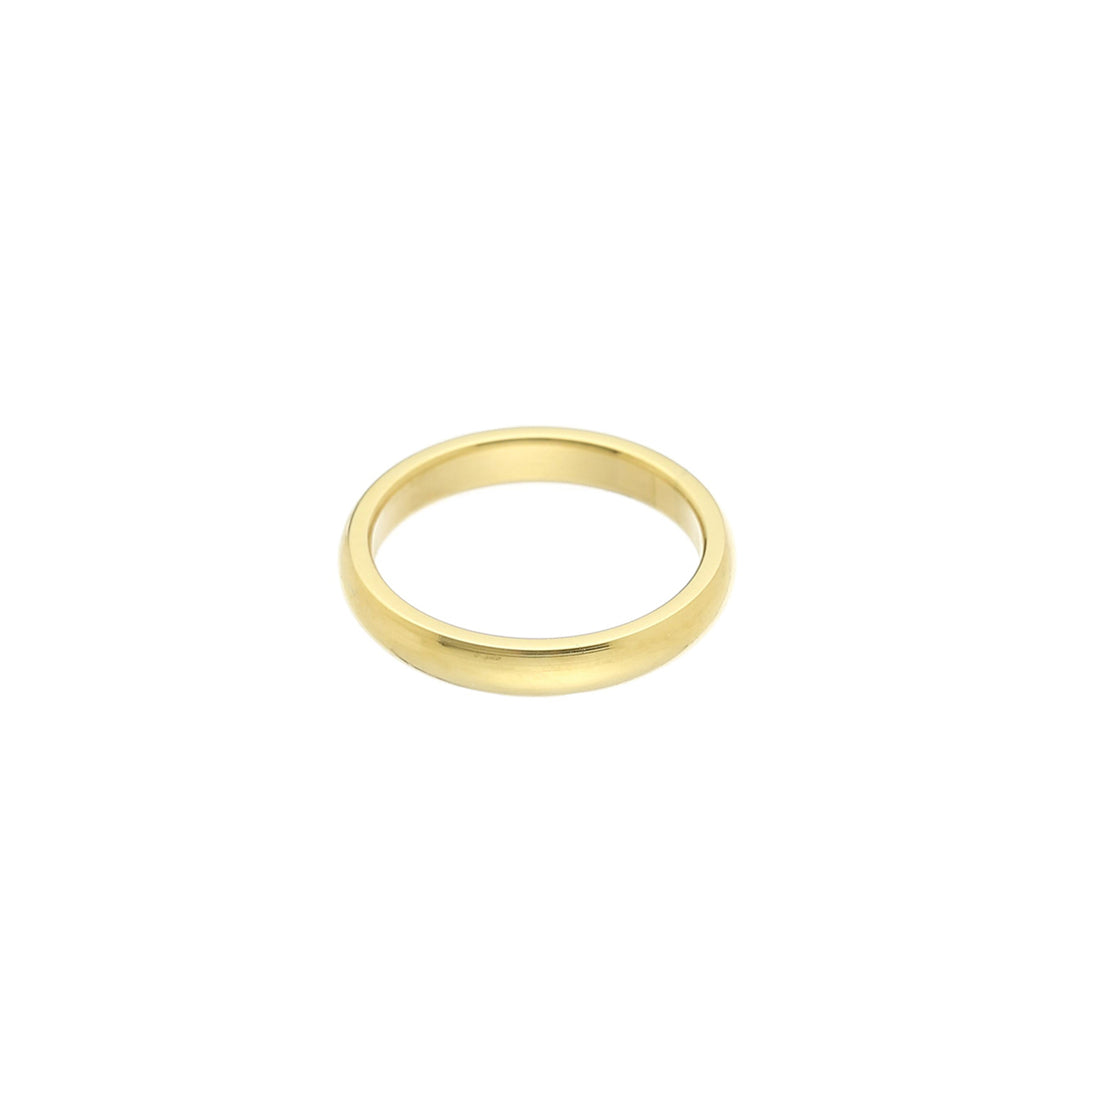 Gouden basic ring. De ring is er in verschillende ringmaten en is gemaakt van roestvrij staal met een gold plated laagje. De ring is waterproof dus verkleurt niet. 